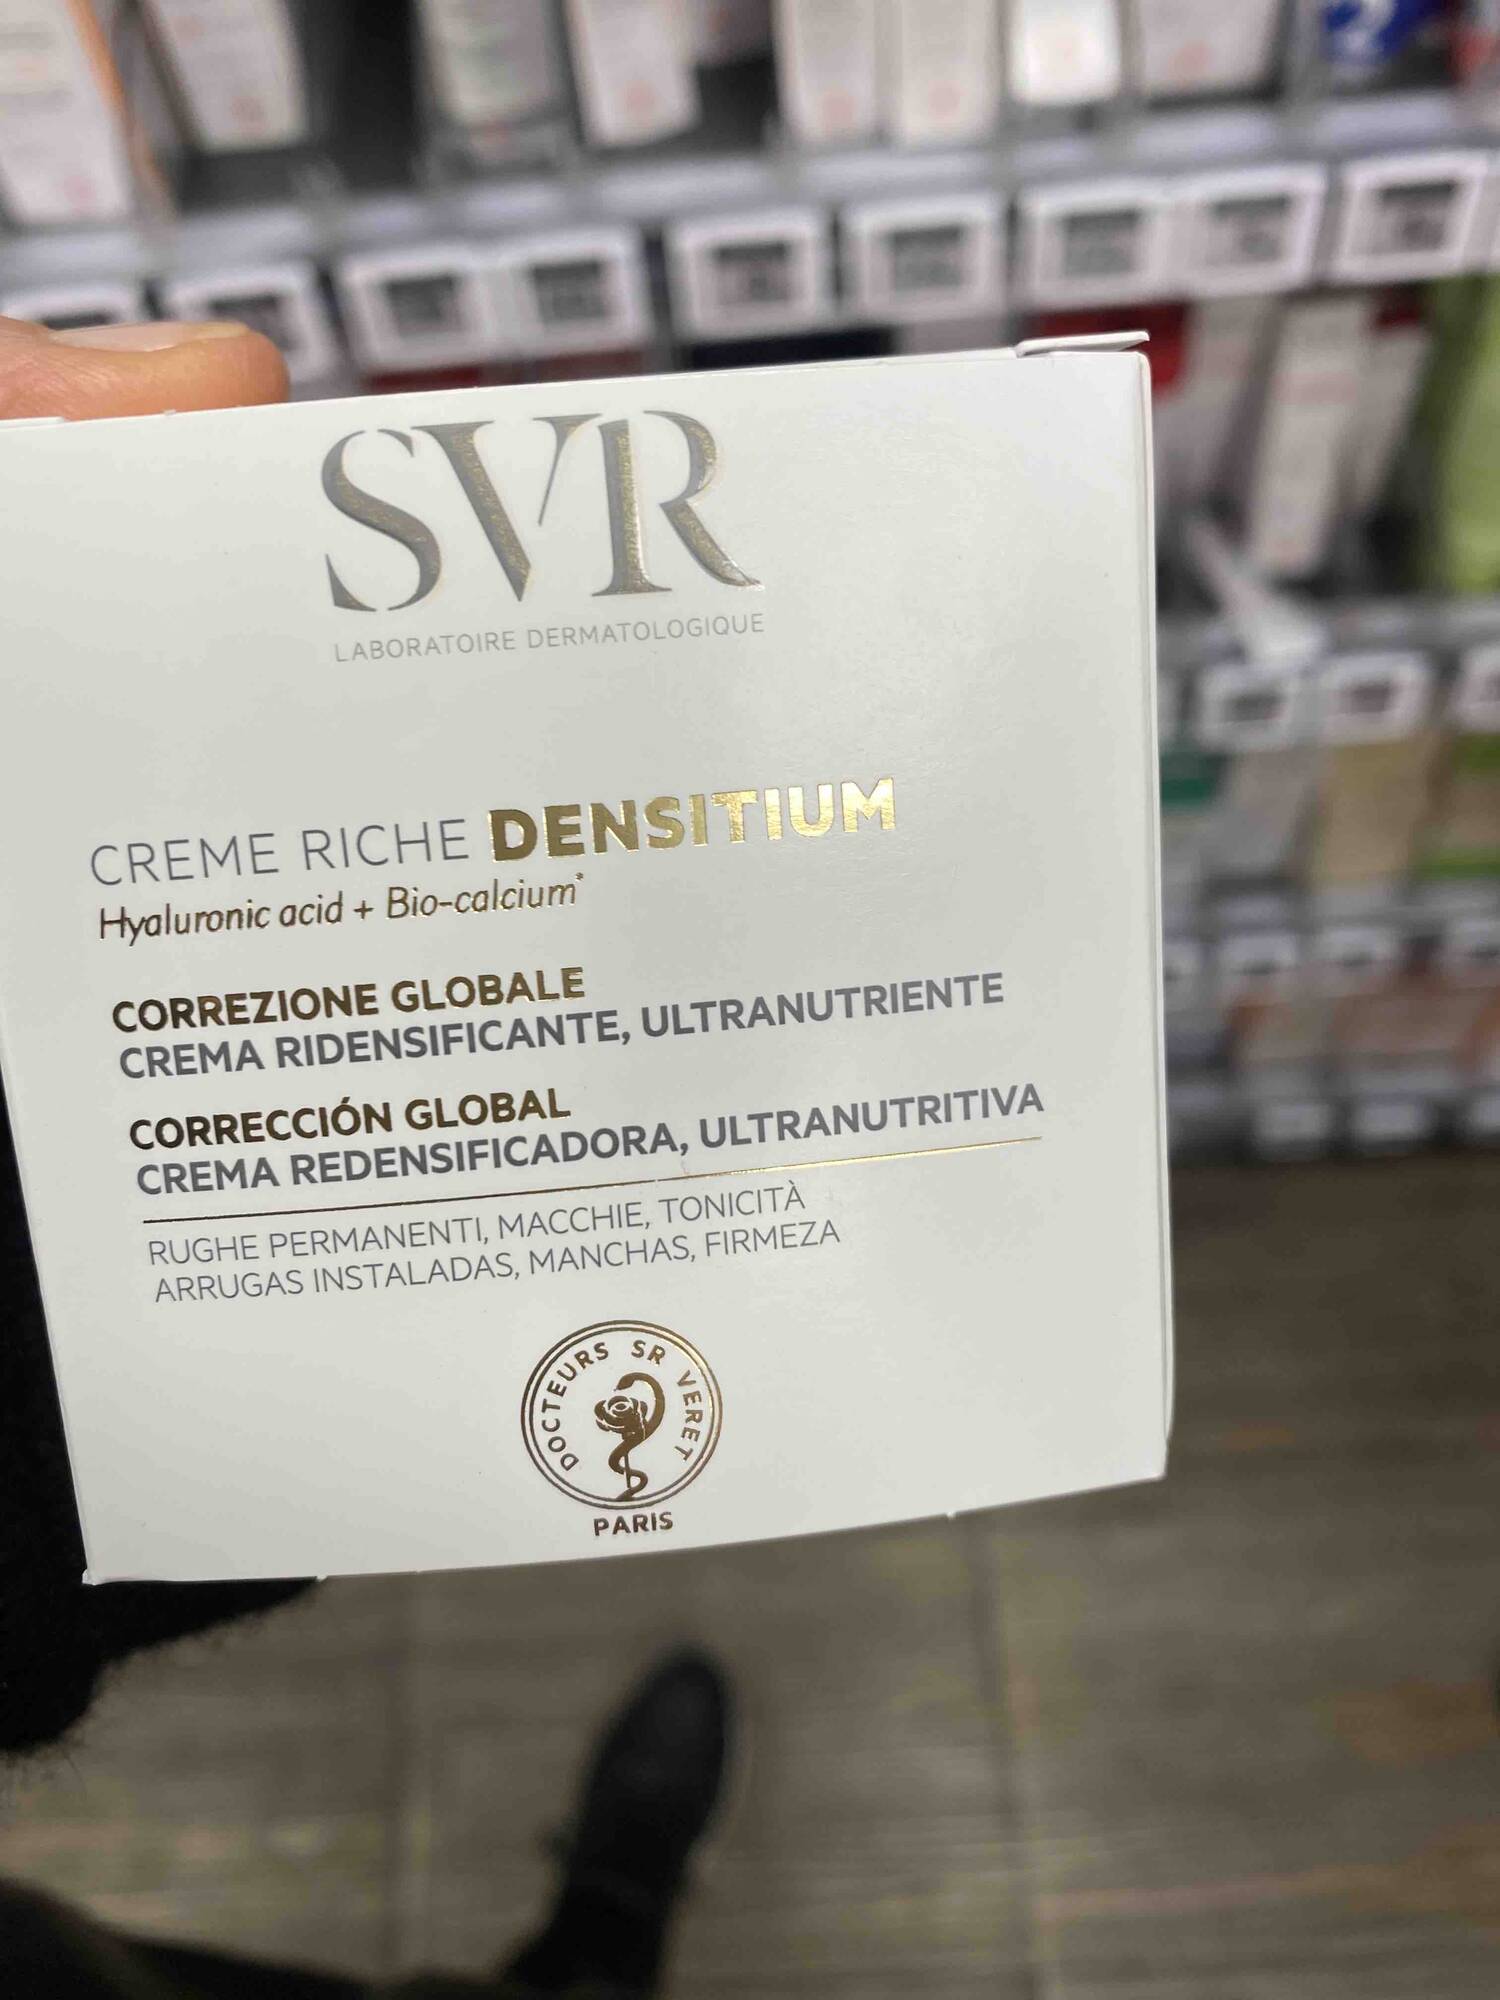 SVR LABORATOIRE DERMATOLOGIQUE - Crème riche densitium 